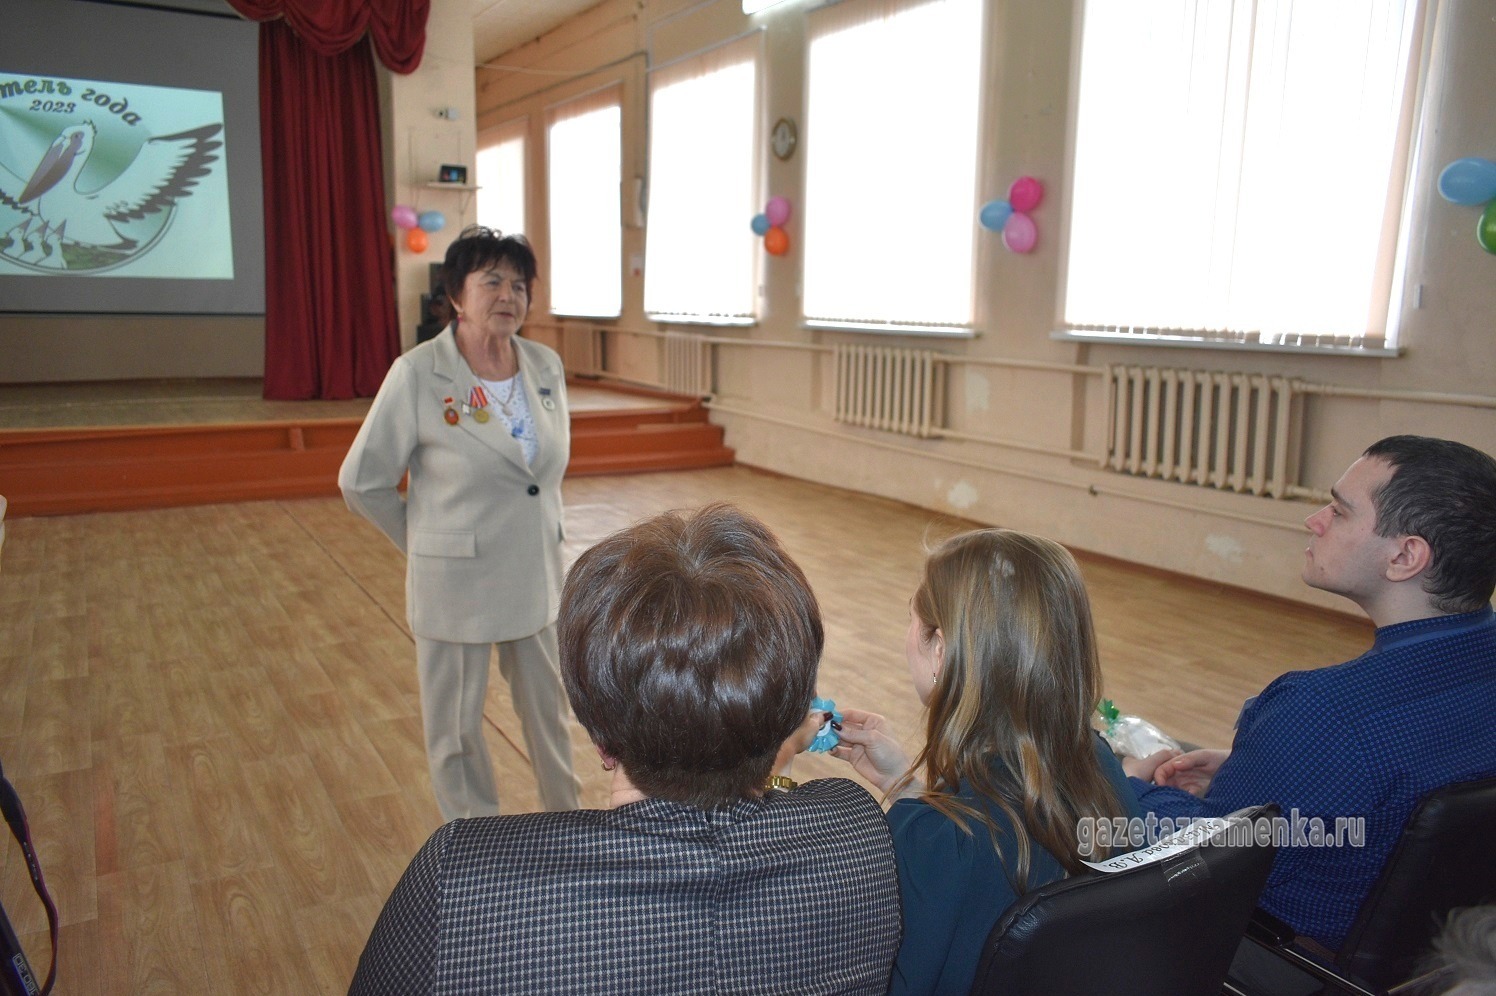 Почётный гражданин и старейший учитель Знаменского района Нина Вавилова приветствует участников конкурса